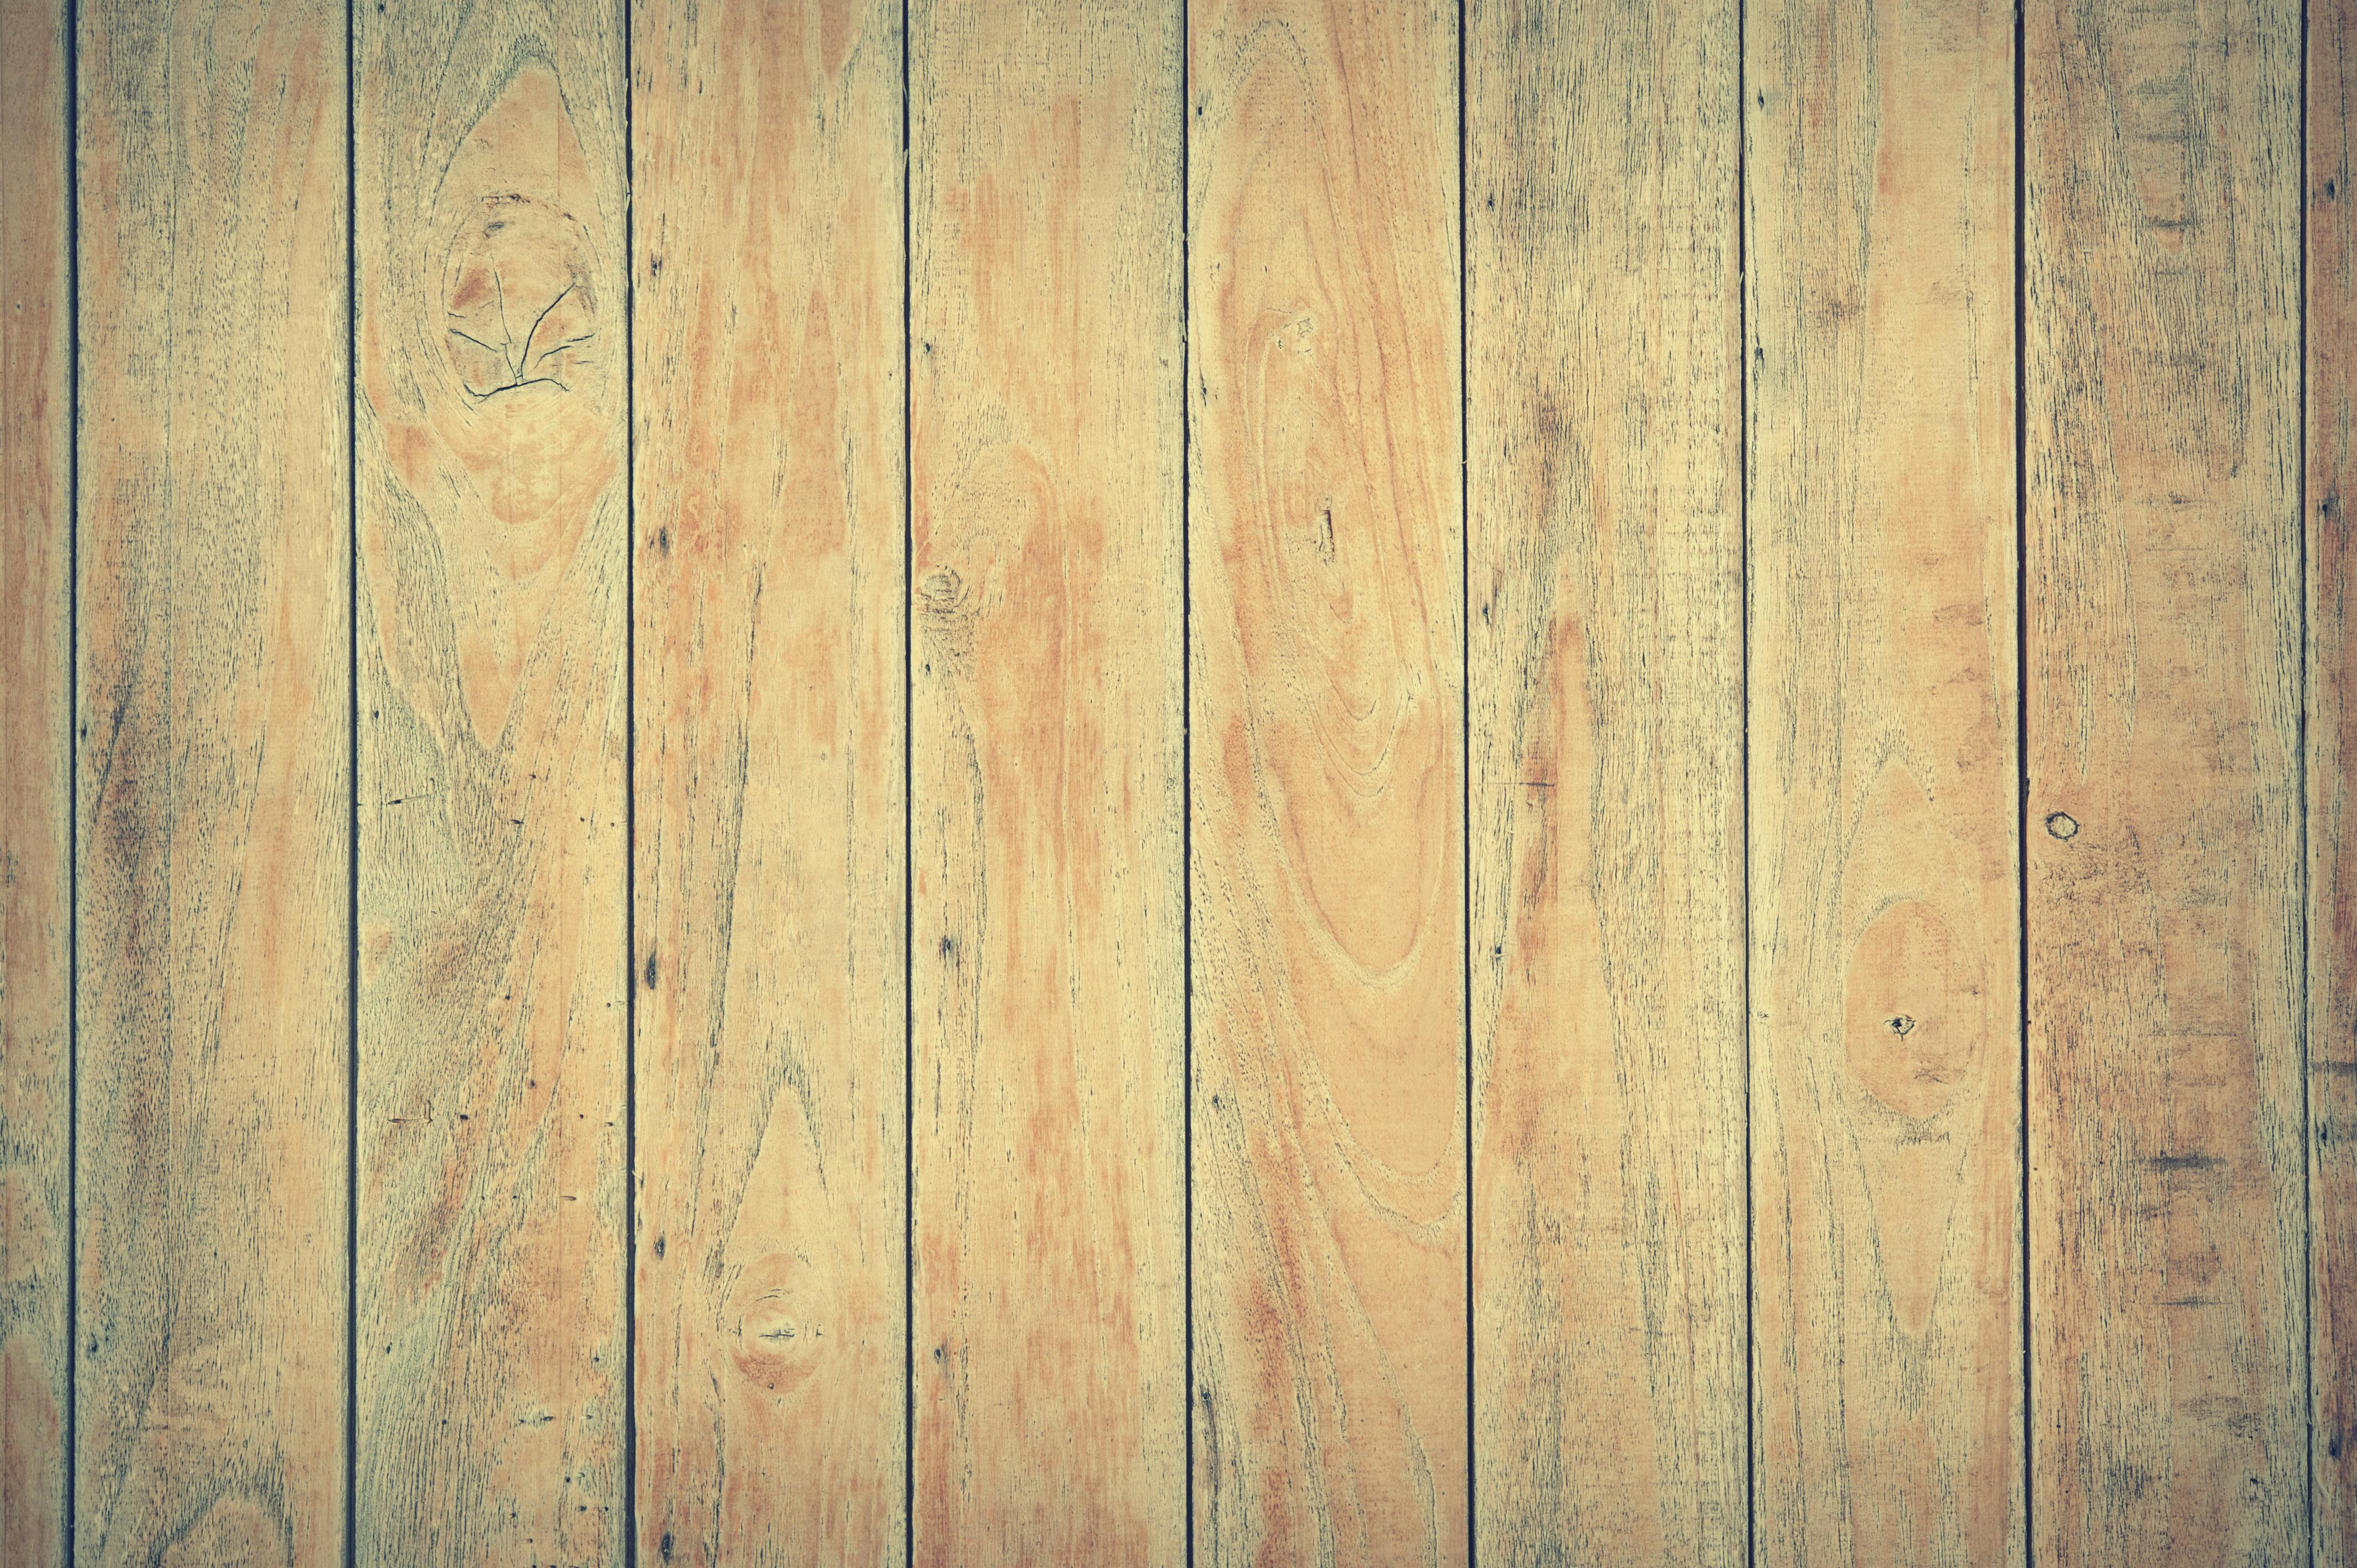 Bề mặt gỗ nâu: Bề mặt gỗ nâu tạo nên vẻ đẹp tự nhiên và ấm cúng. Thích hợp cho nhiều phong cách trang trí và không gian khác nhau. Xem ảnh liên quan để cảm nhận và khám phá thêm về vẻ đẹp của bề mặt gỗ nâu.